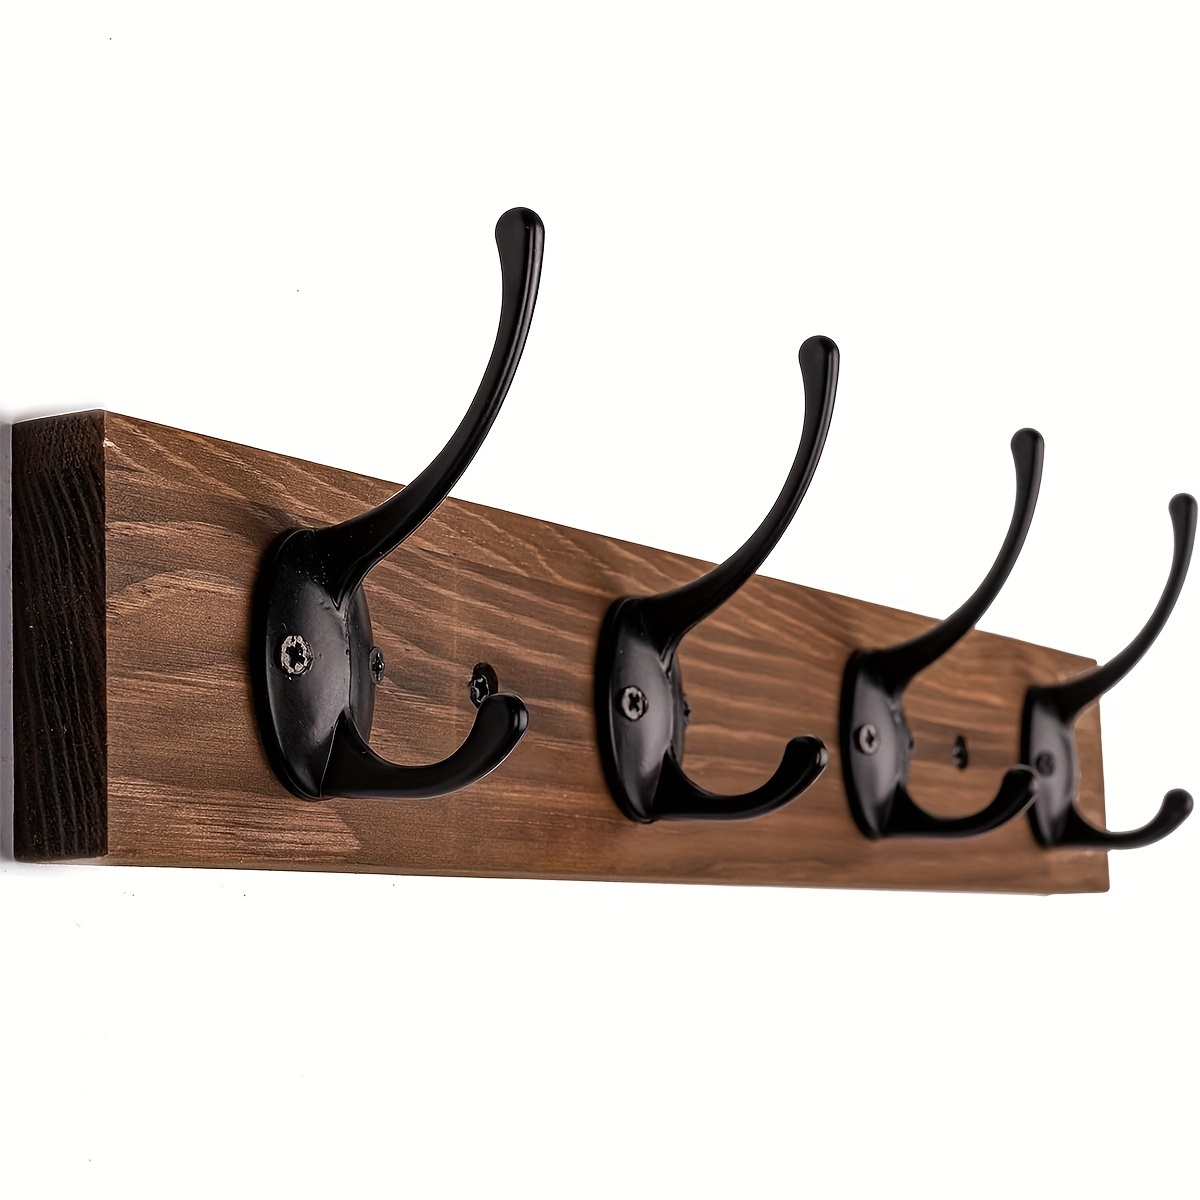 Wooden Wall Hooks, Wooden Wall Pegs, Wooden Coat Hooks